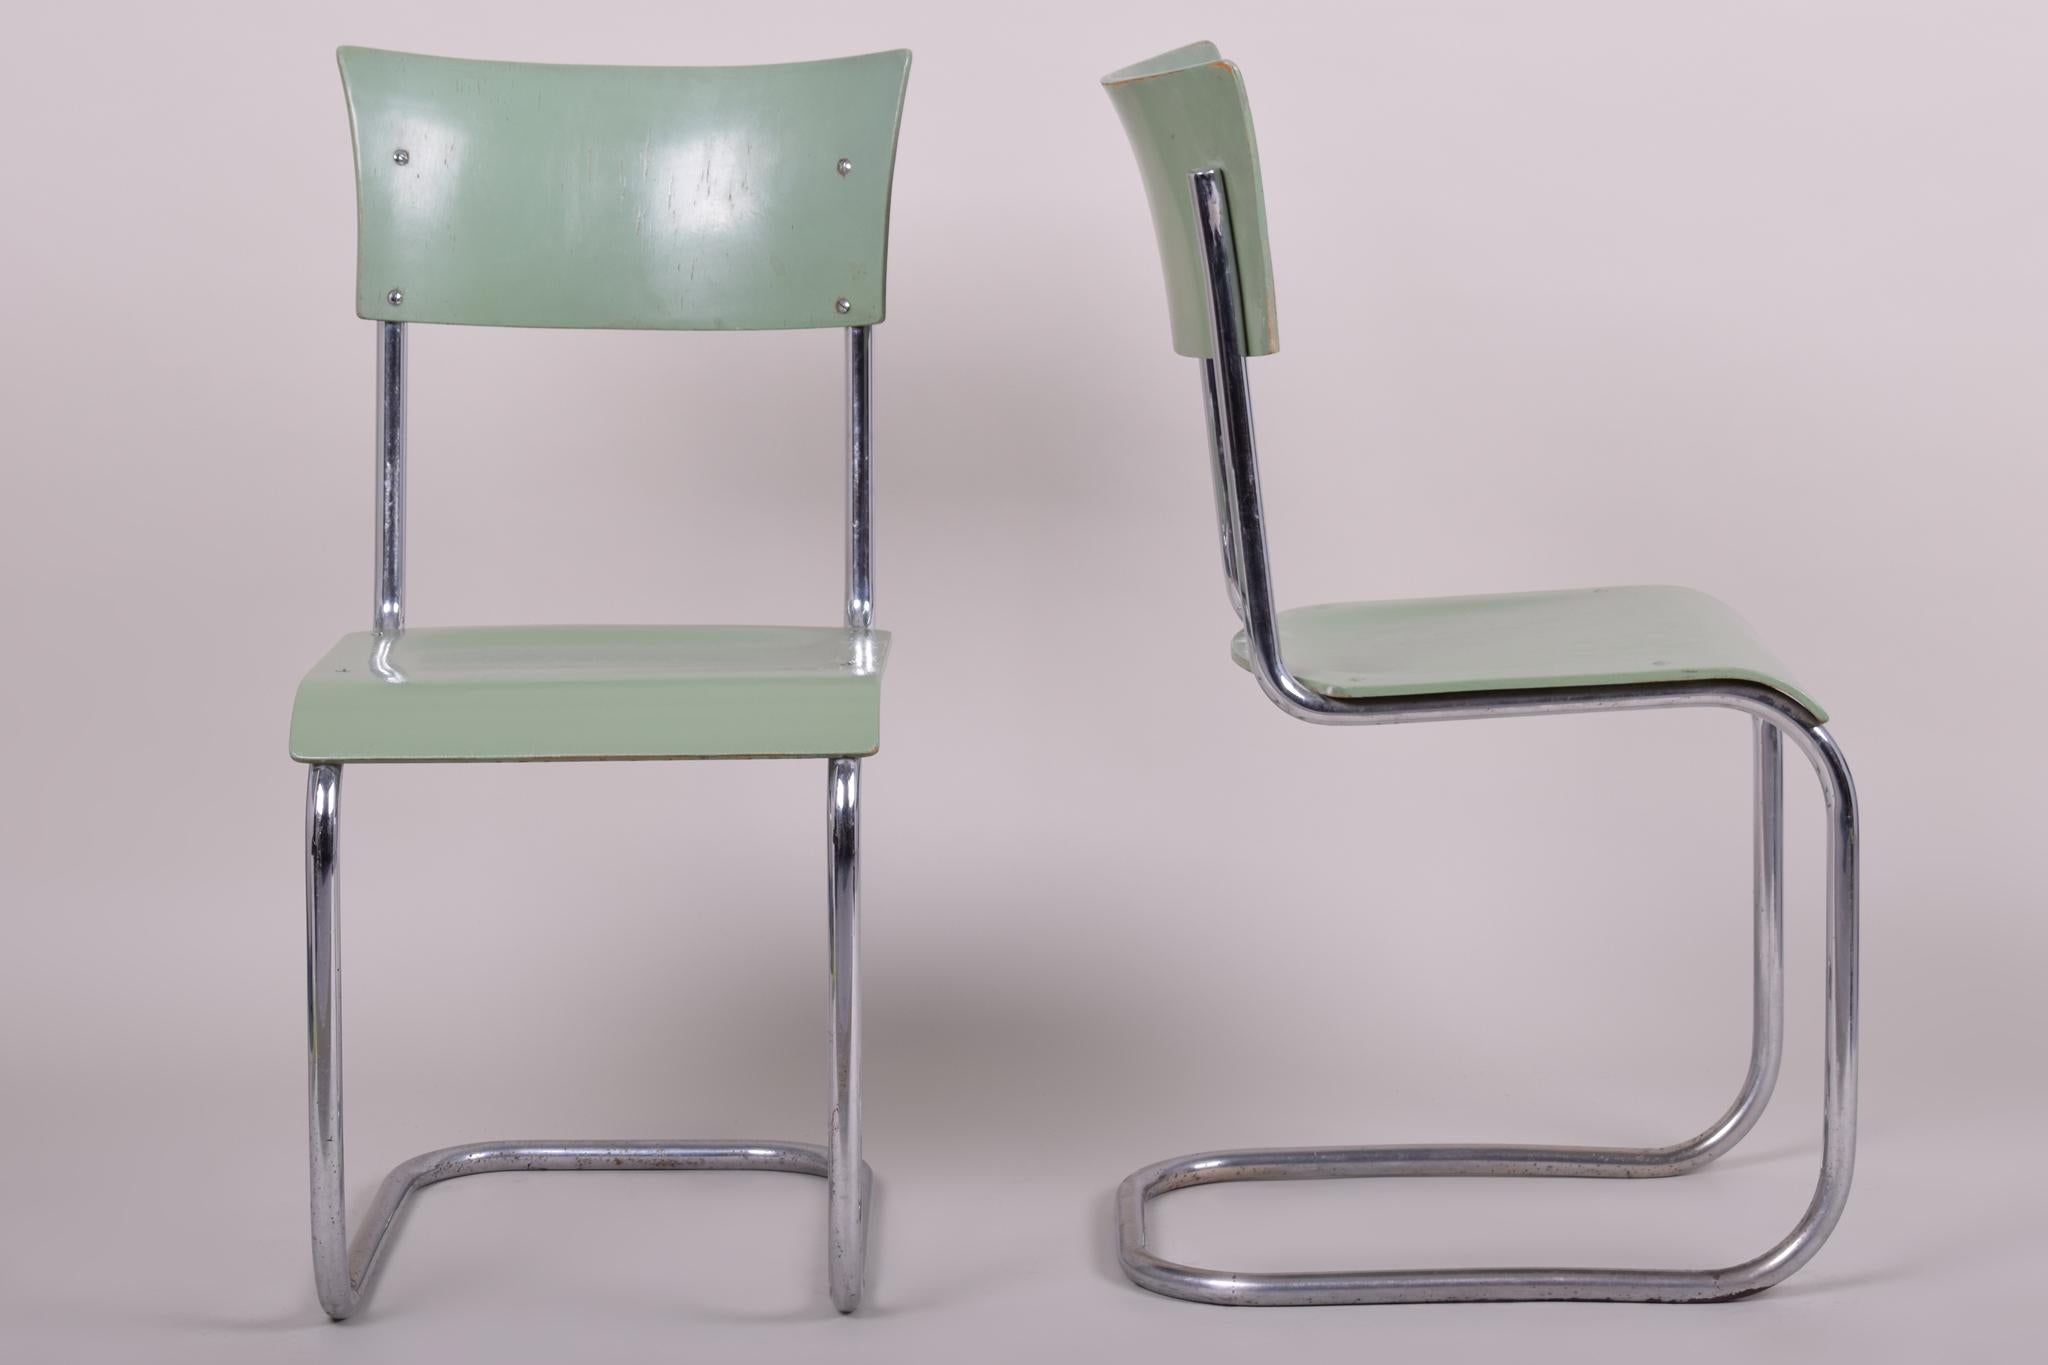 Ces chaises Bauhaus originales fabriquées par Robert Slezák sont une représentation parfaite de l'élégance simpliste de l'ère Bauhaus.

Ce parfait exemple du style Bauhaus tchèque a été produit par Robert Slezák, issu d'un important conglomérat de